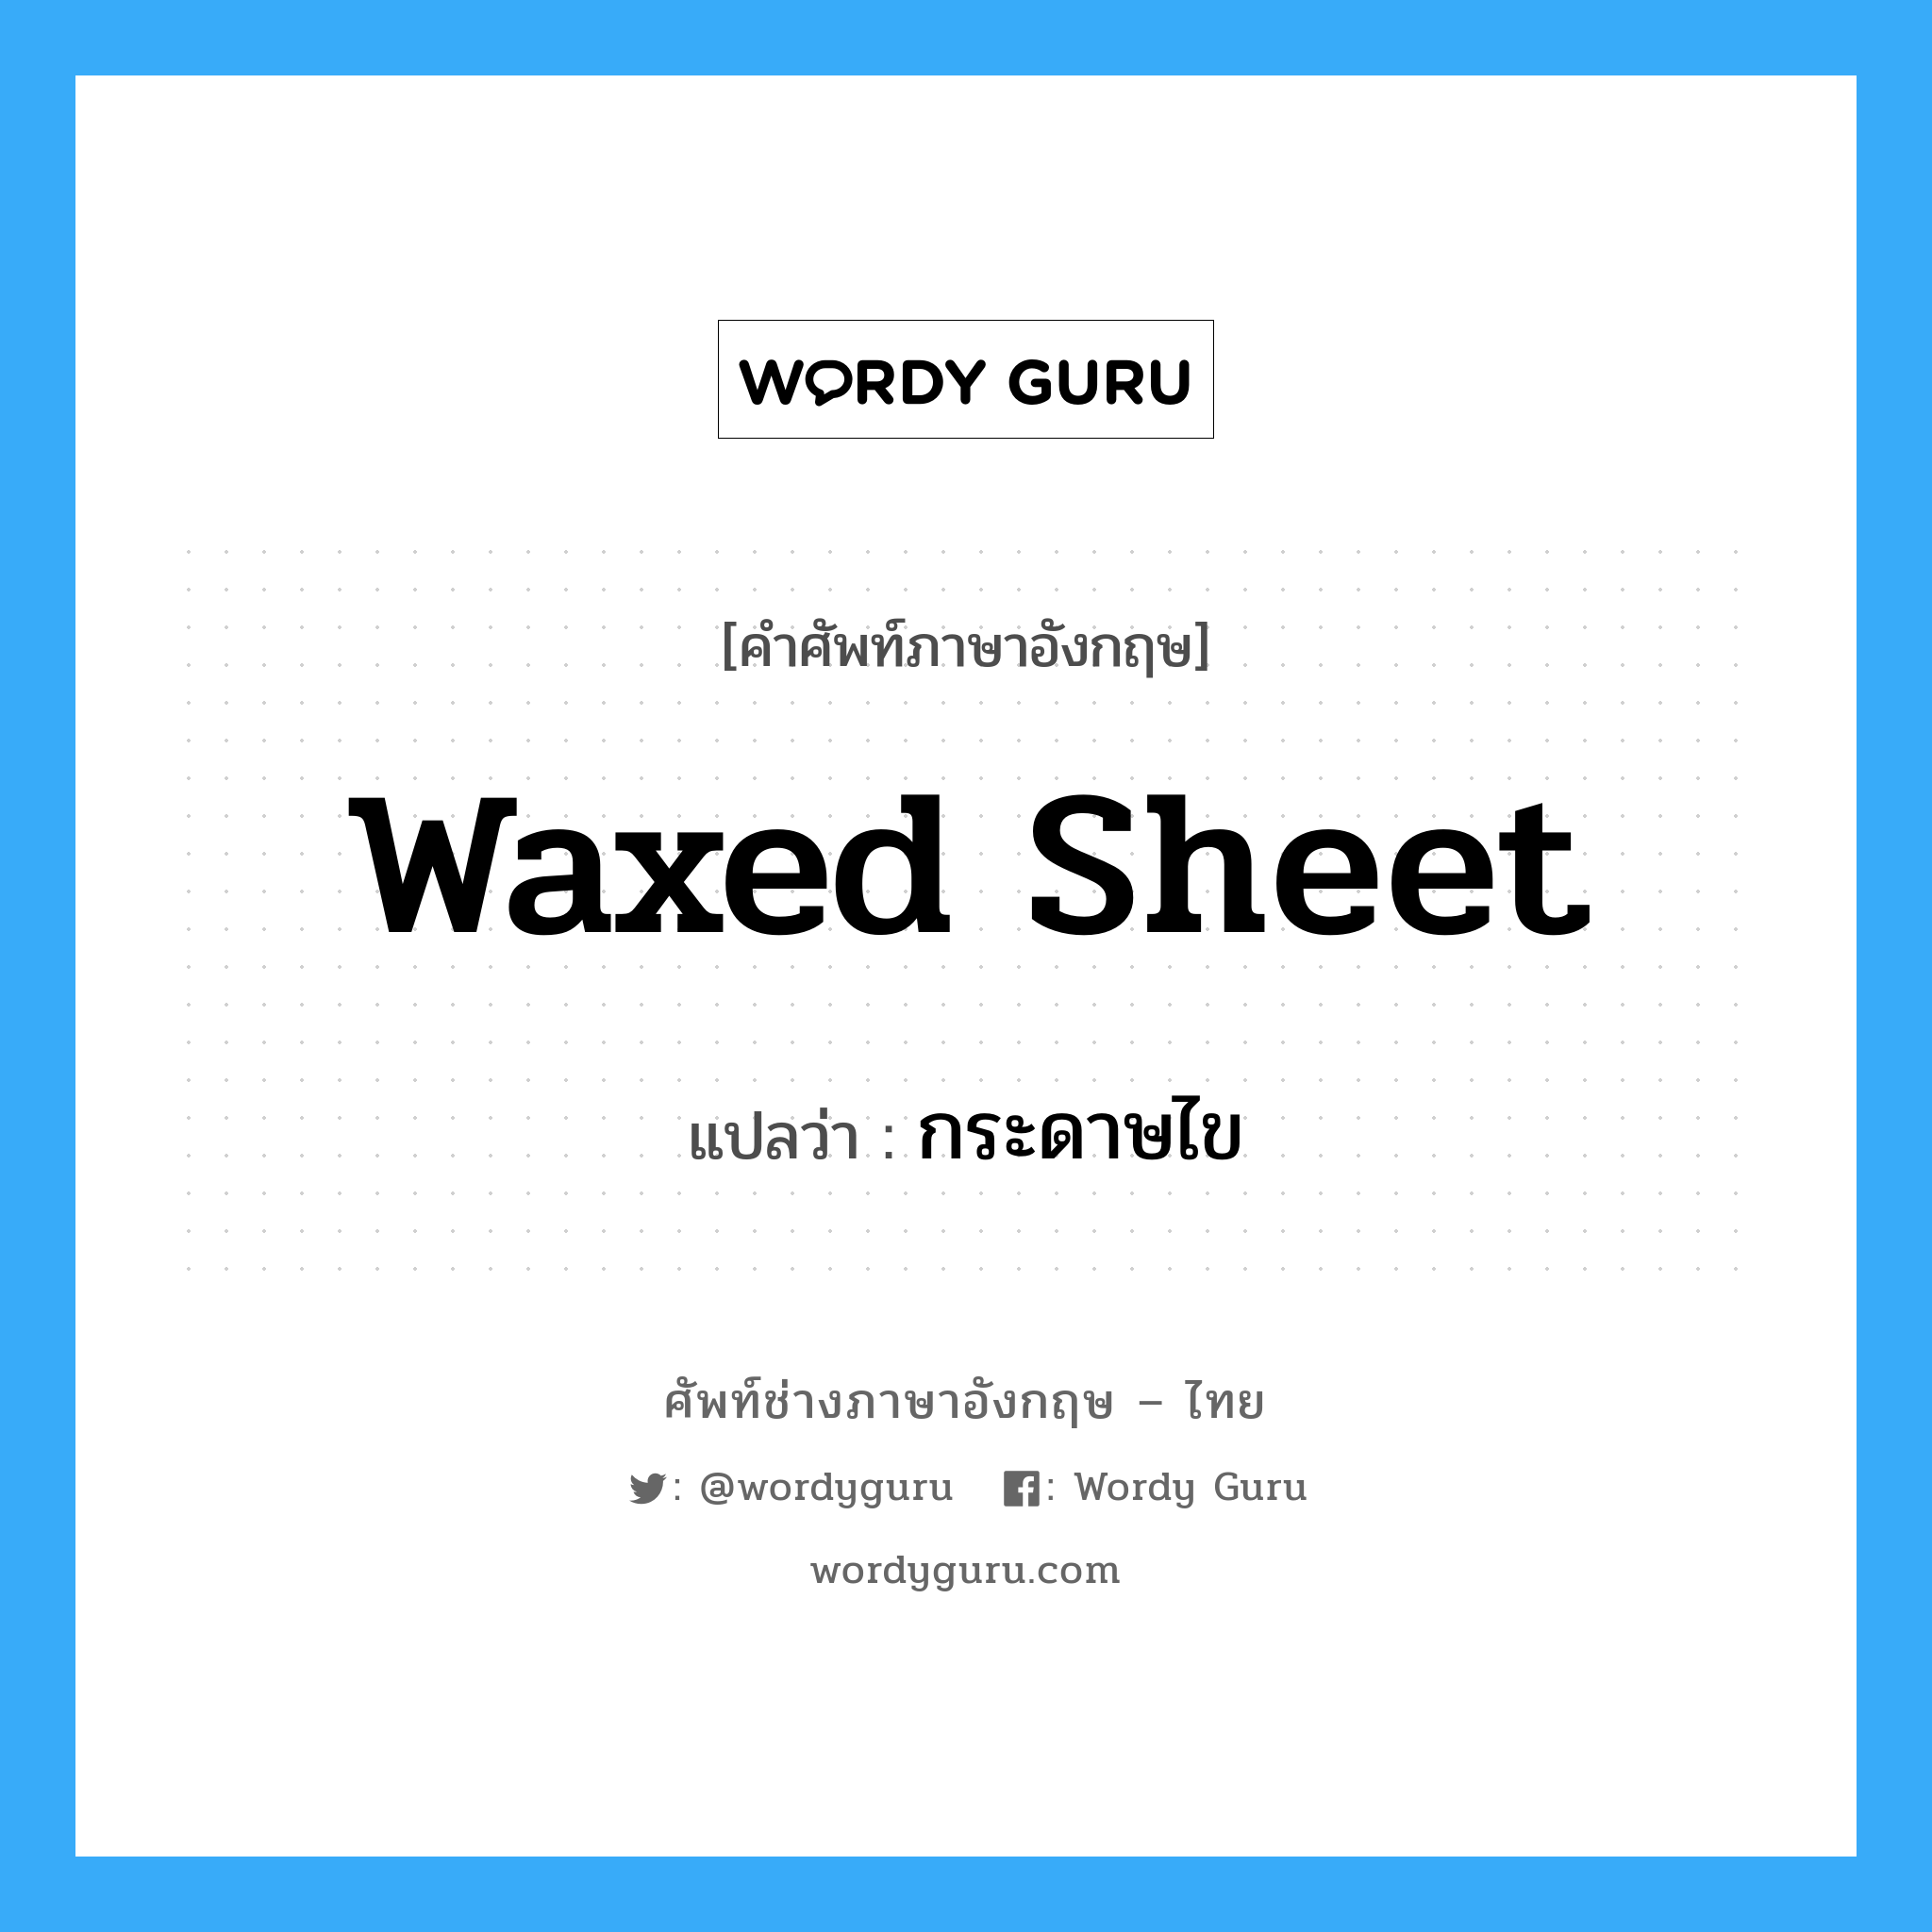 waxed sheet แปลว่า?, คำศัพท์ช่างภาษาอังกฤษ - ไทย waxed sheet คำศัพท์ภาษาอังกฤษ waxed sheet แปลว่า กระดาษไข